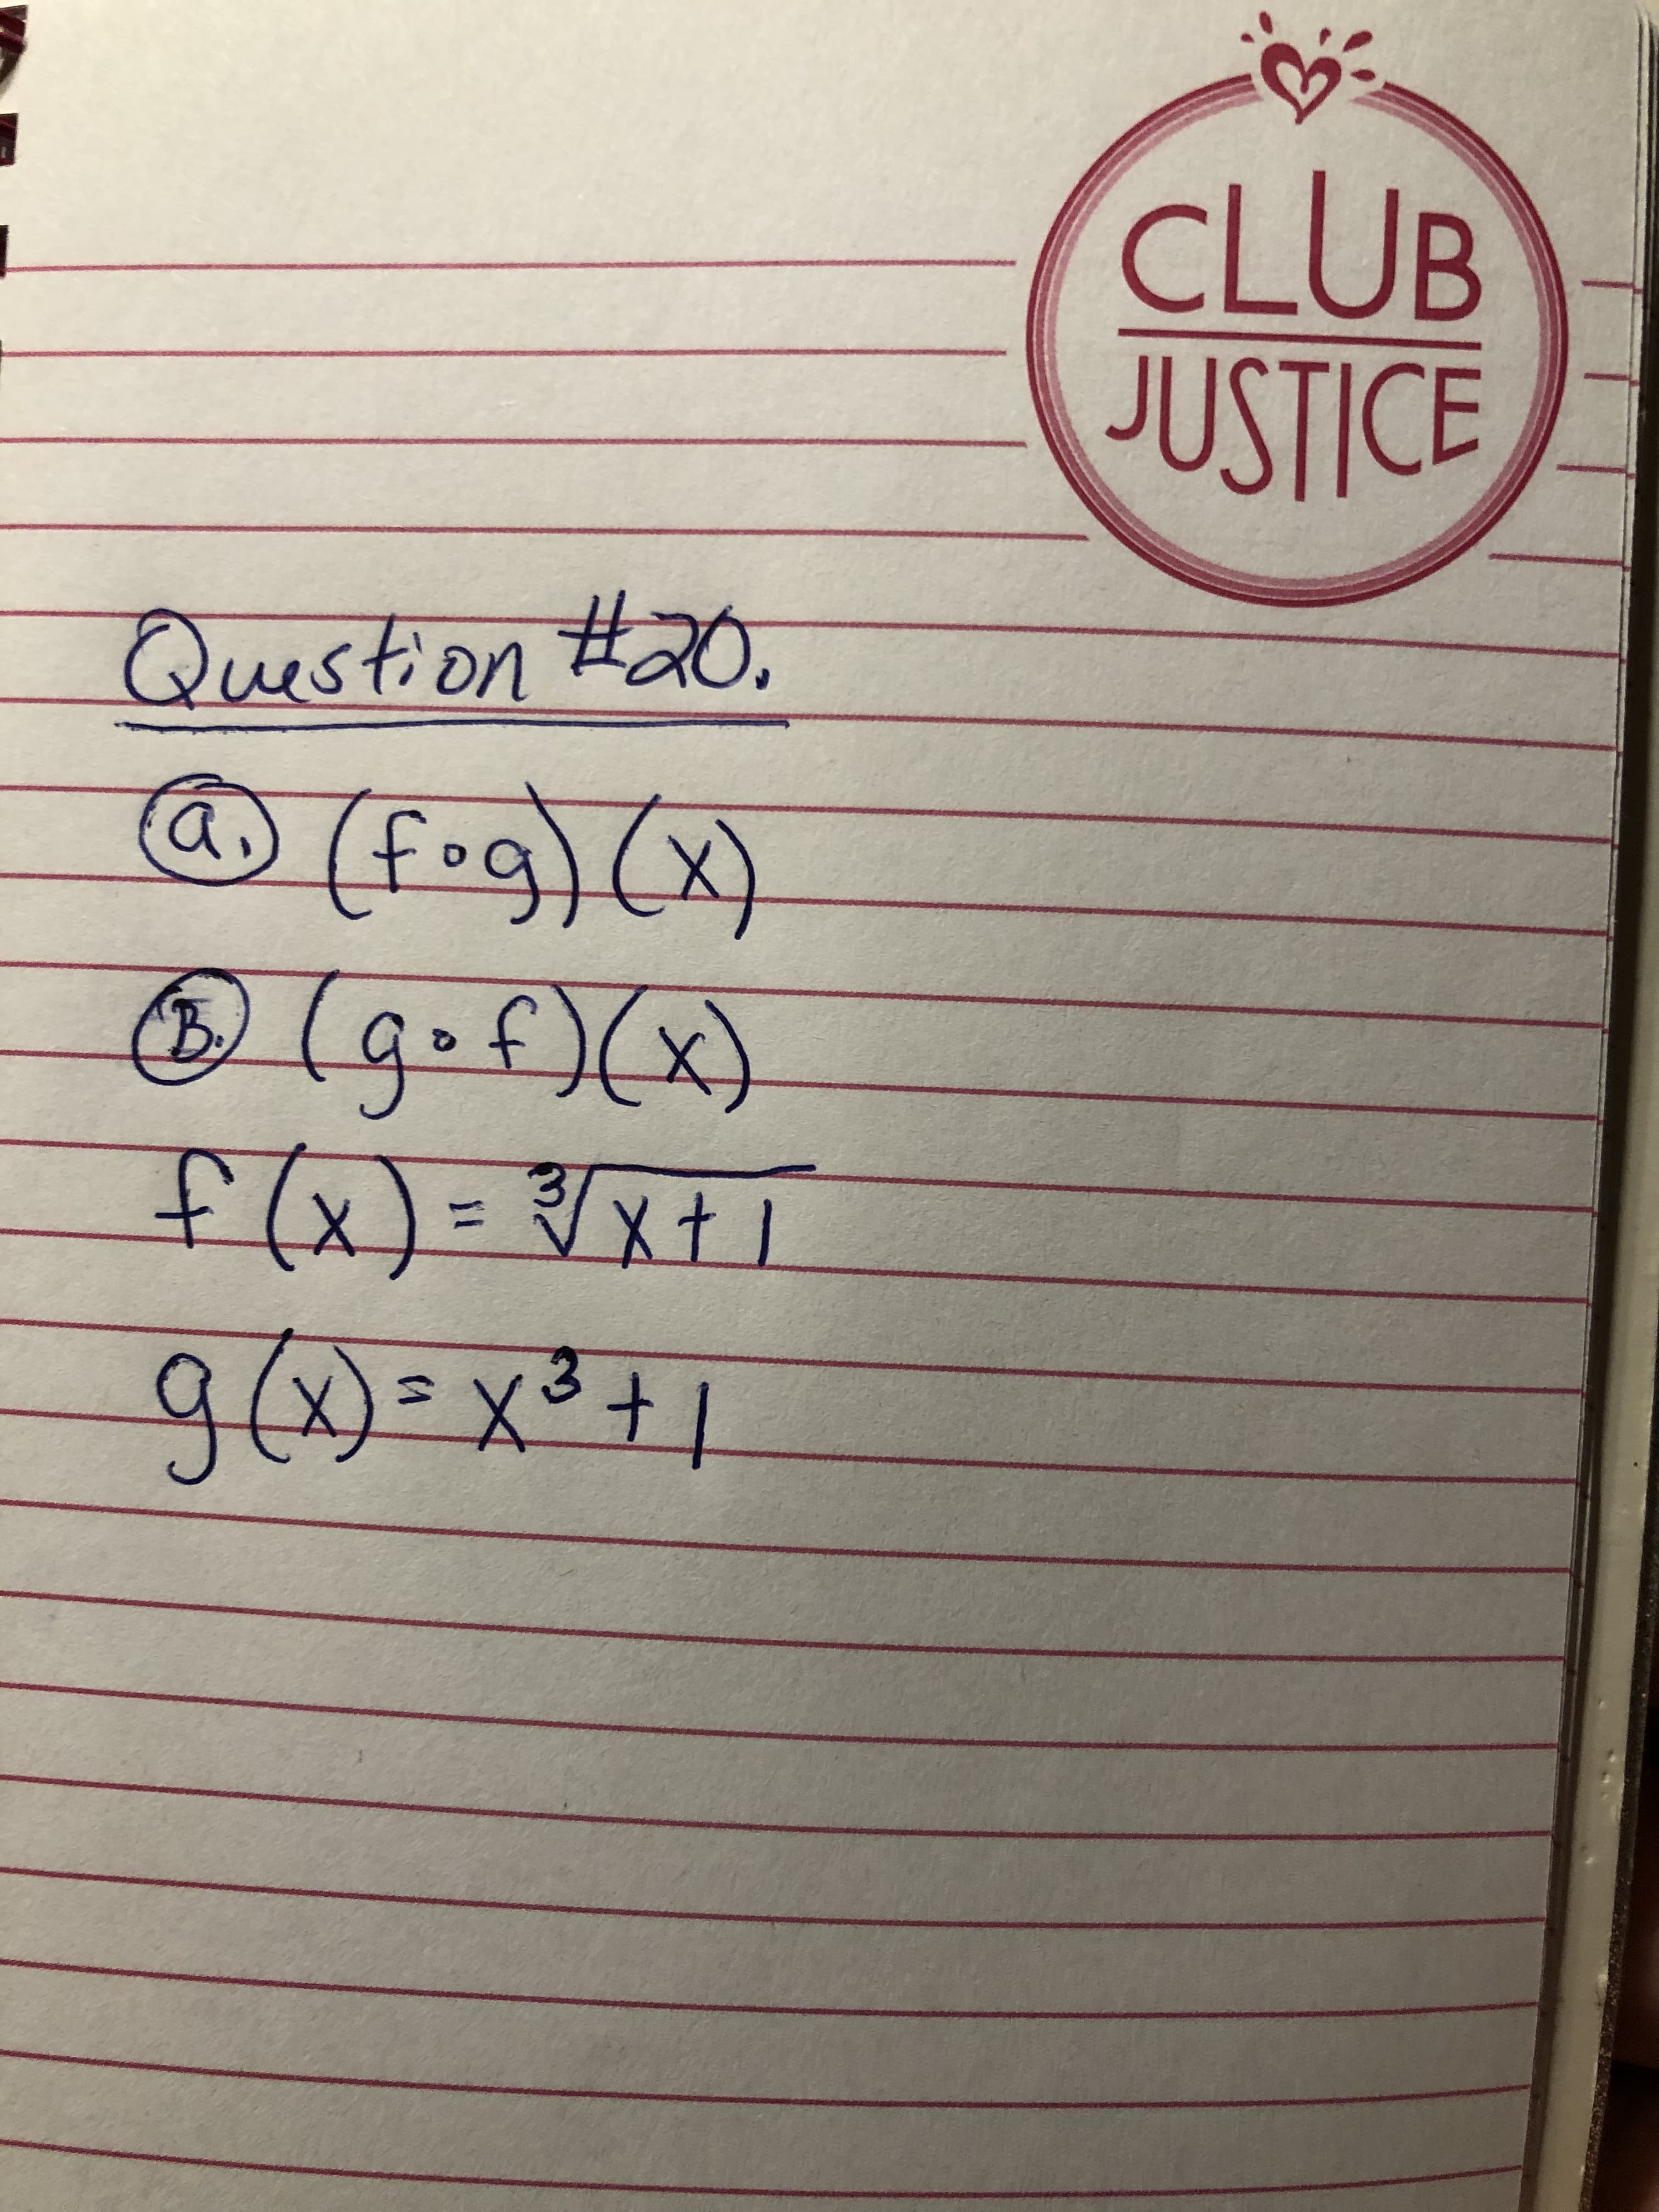 CLUB
JUSTICE
Question
#20.
@(fog)(x)
(gof)(x)
f(x)= /xt1
(B)
3.
9(x)=x²+1
